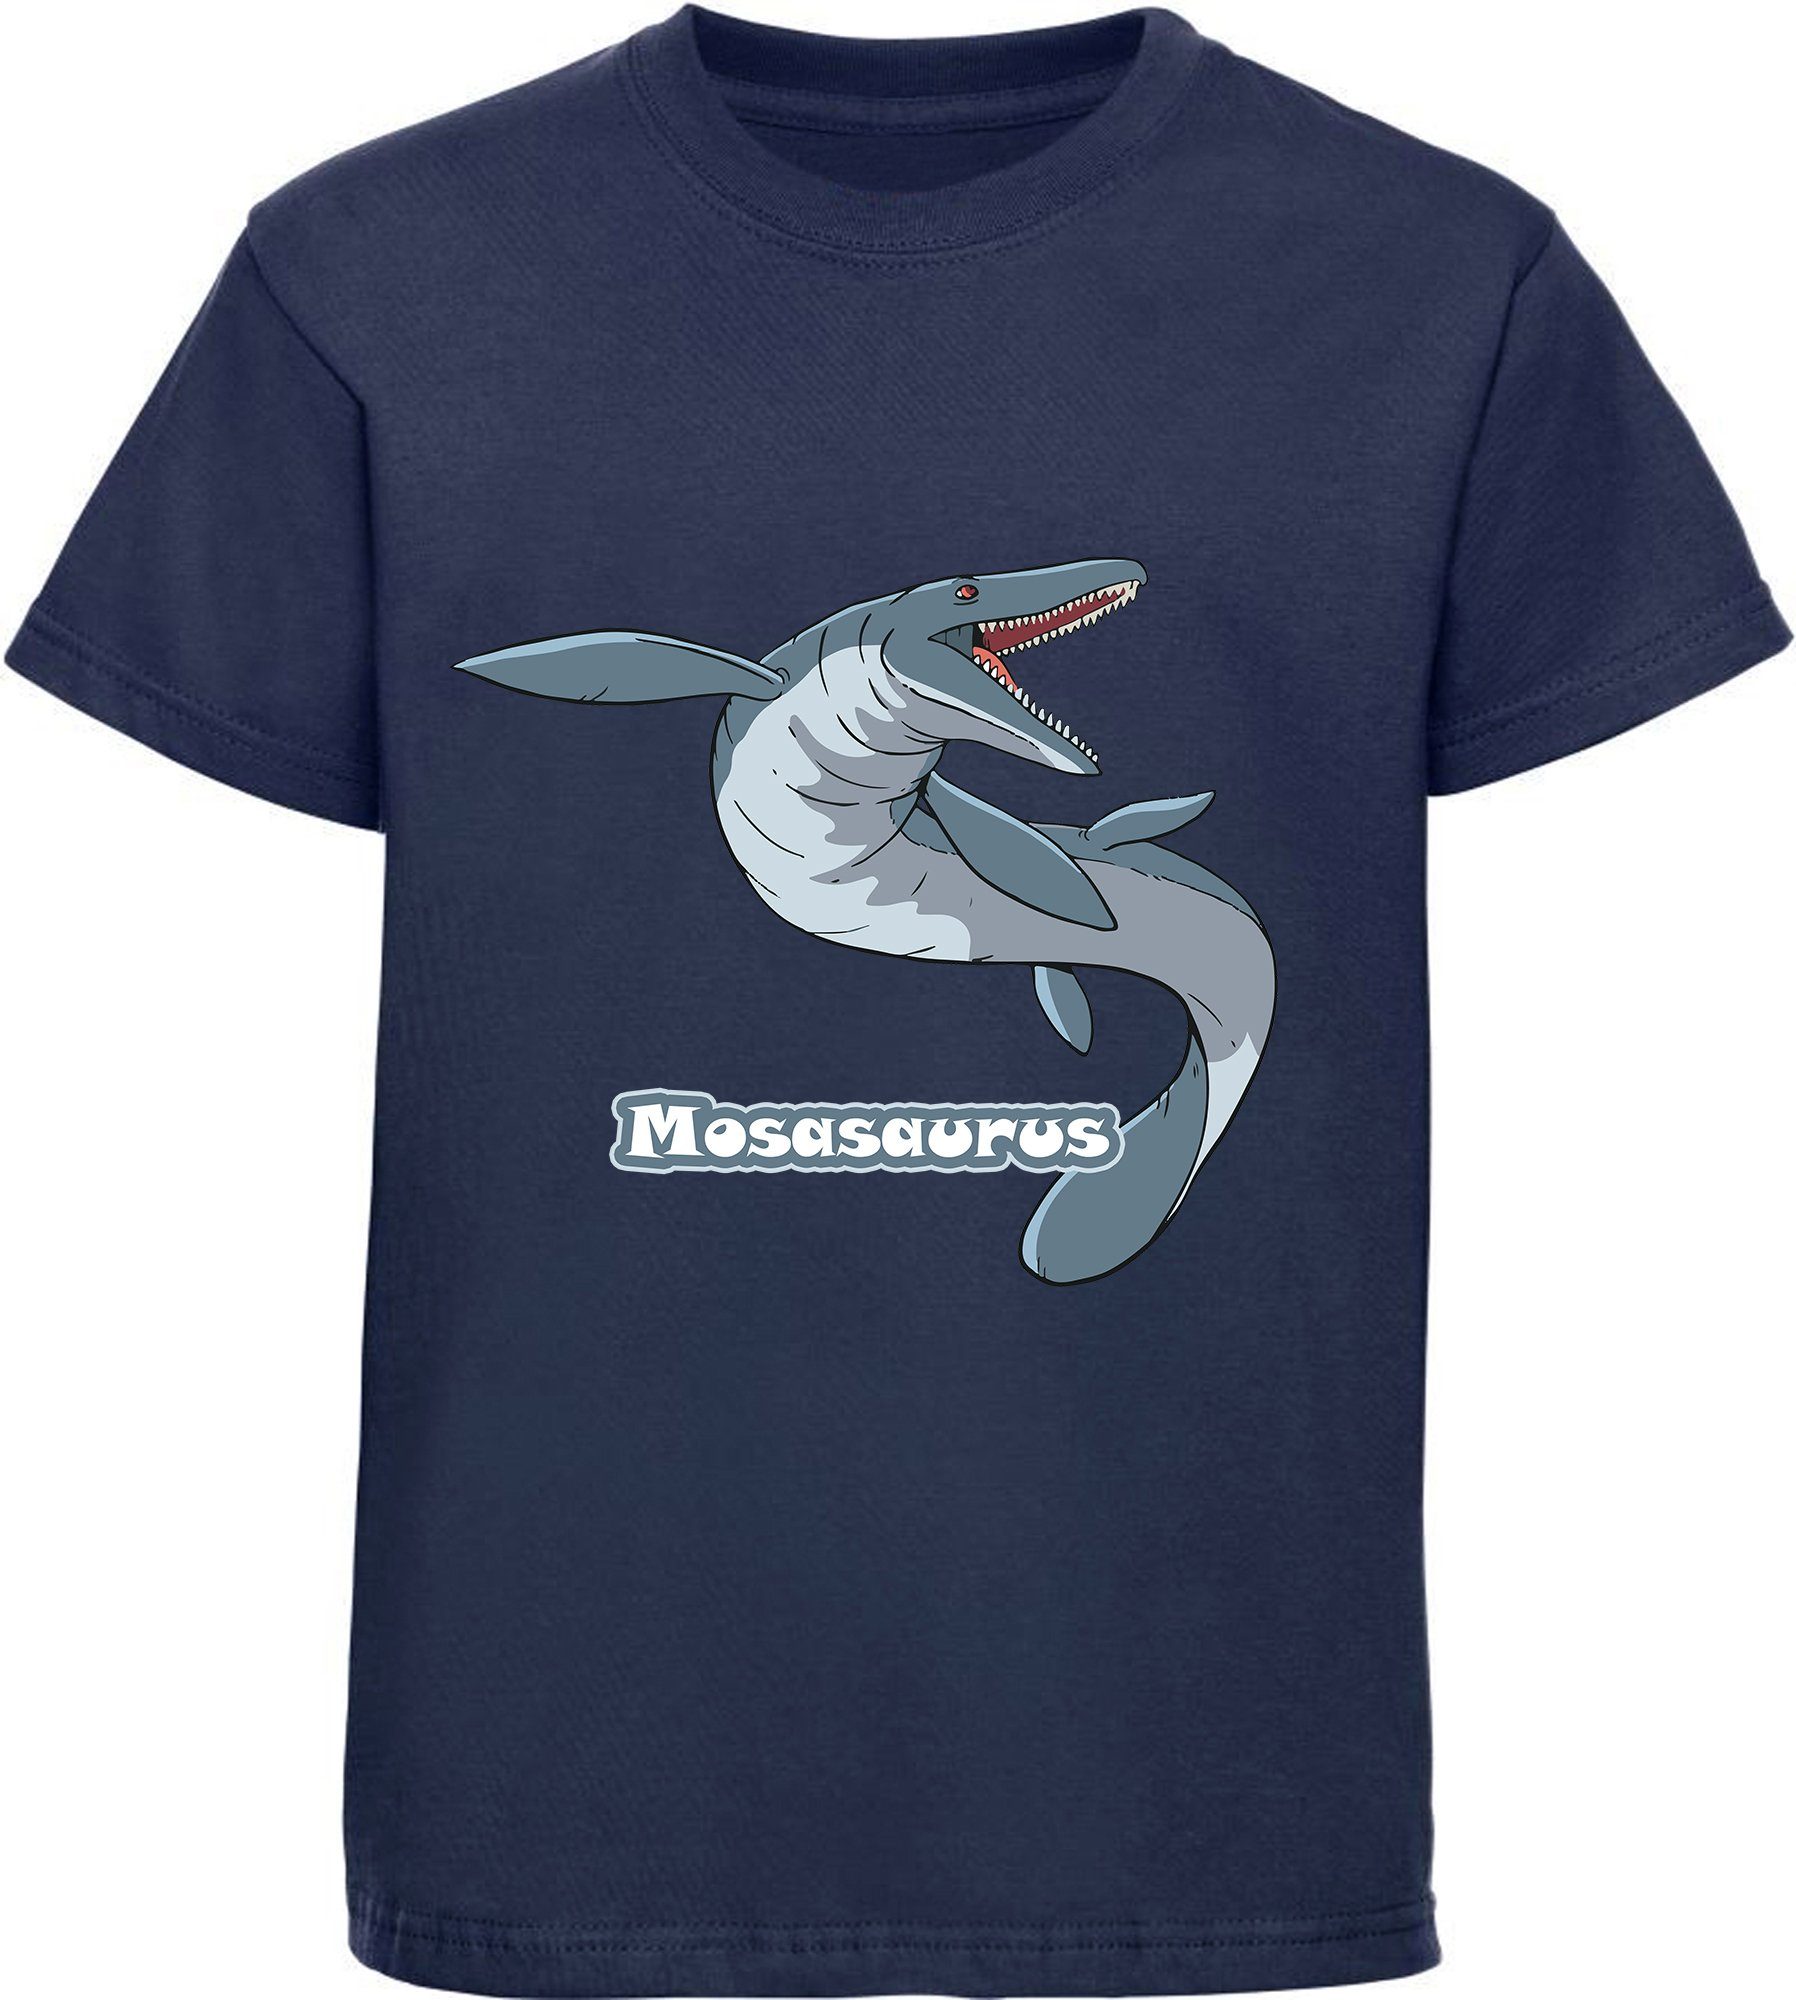 MyDesign24 T-Shirt bedrucktes Kinder T-Shirt mit Mosasaurus 100% Baumwolle mit Dino Aufdruck, navy blau i51